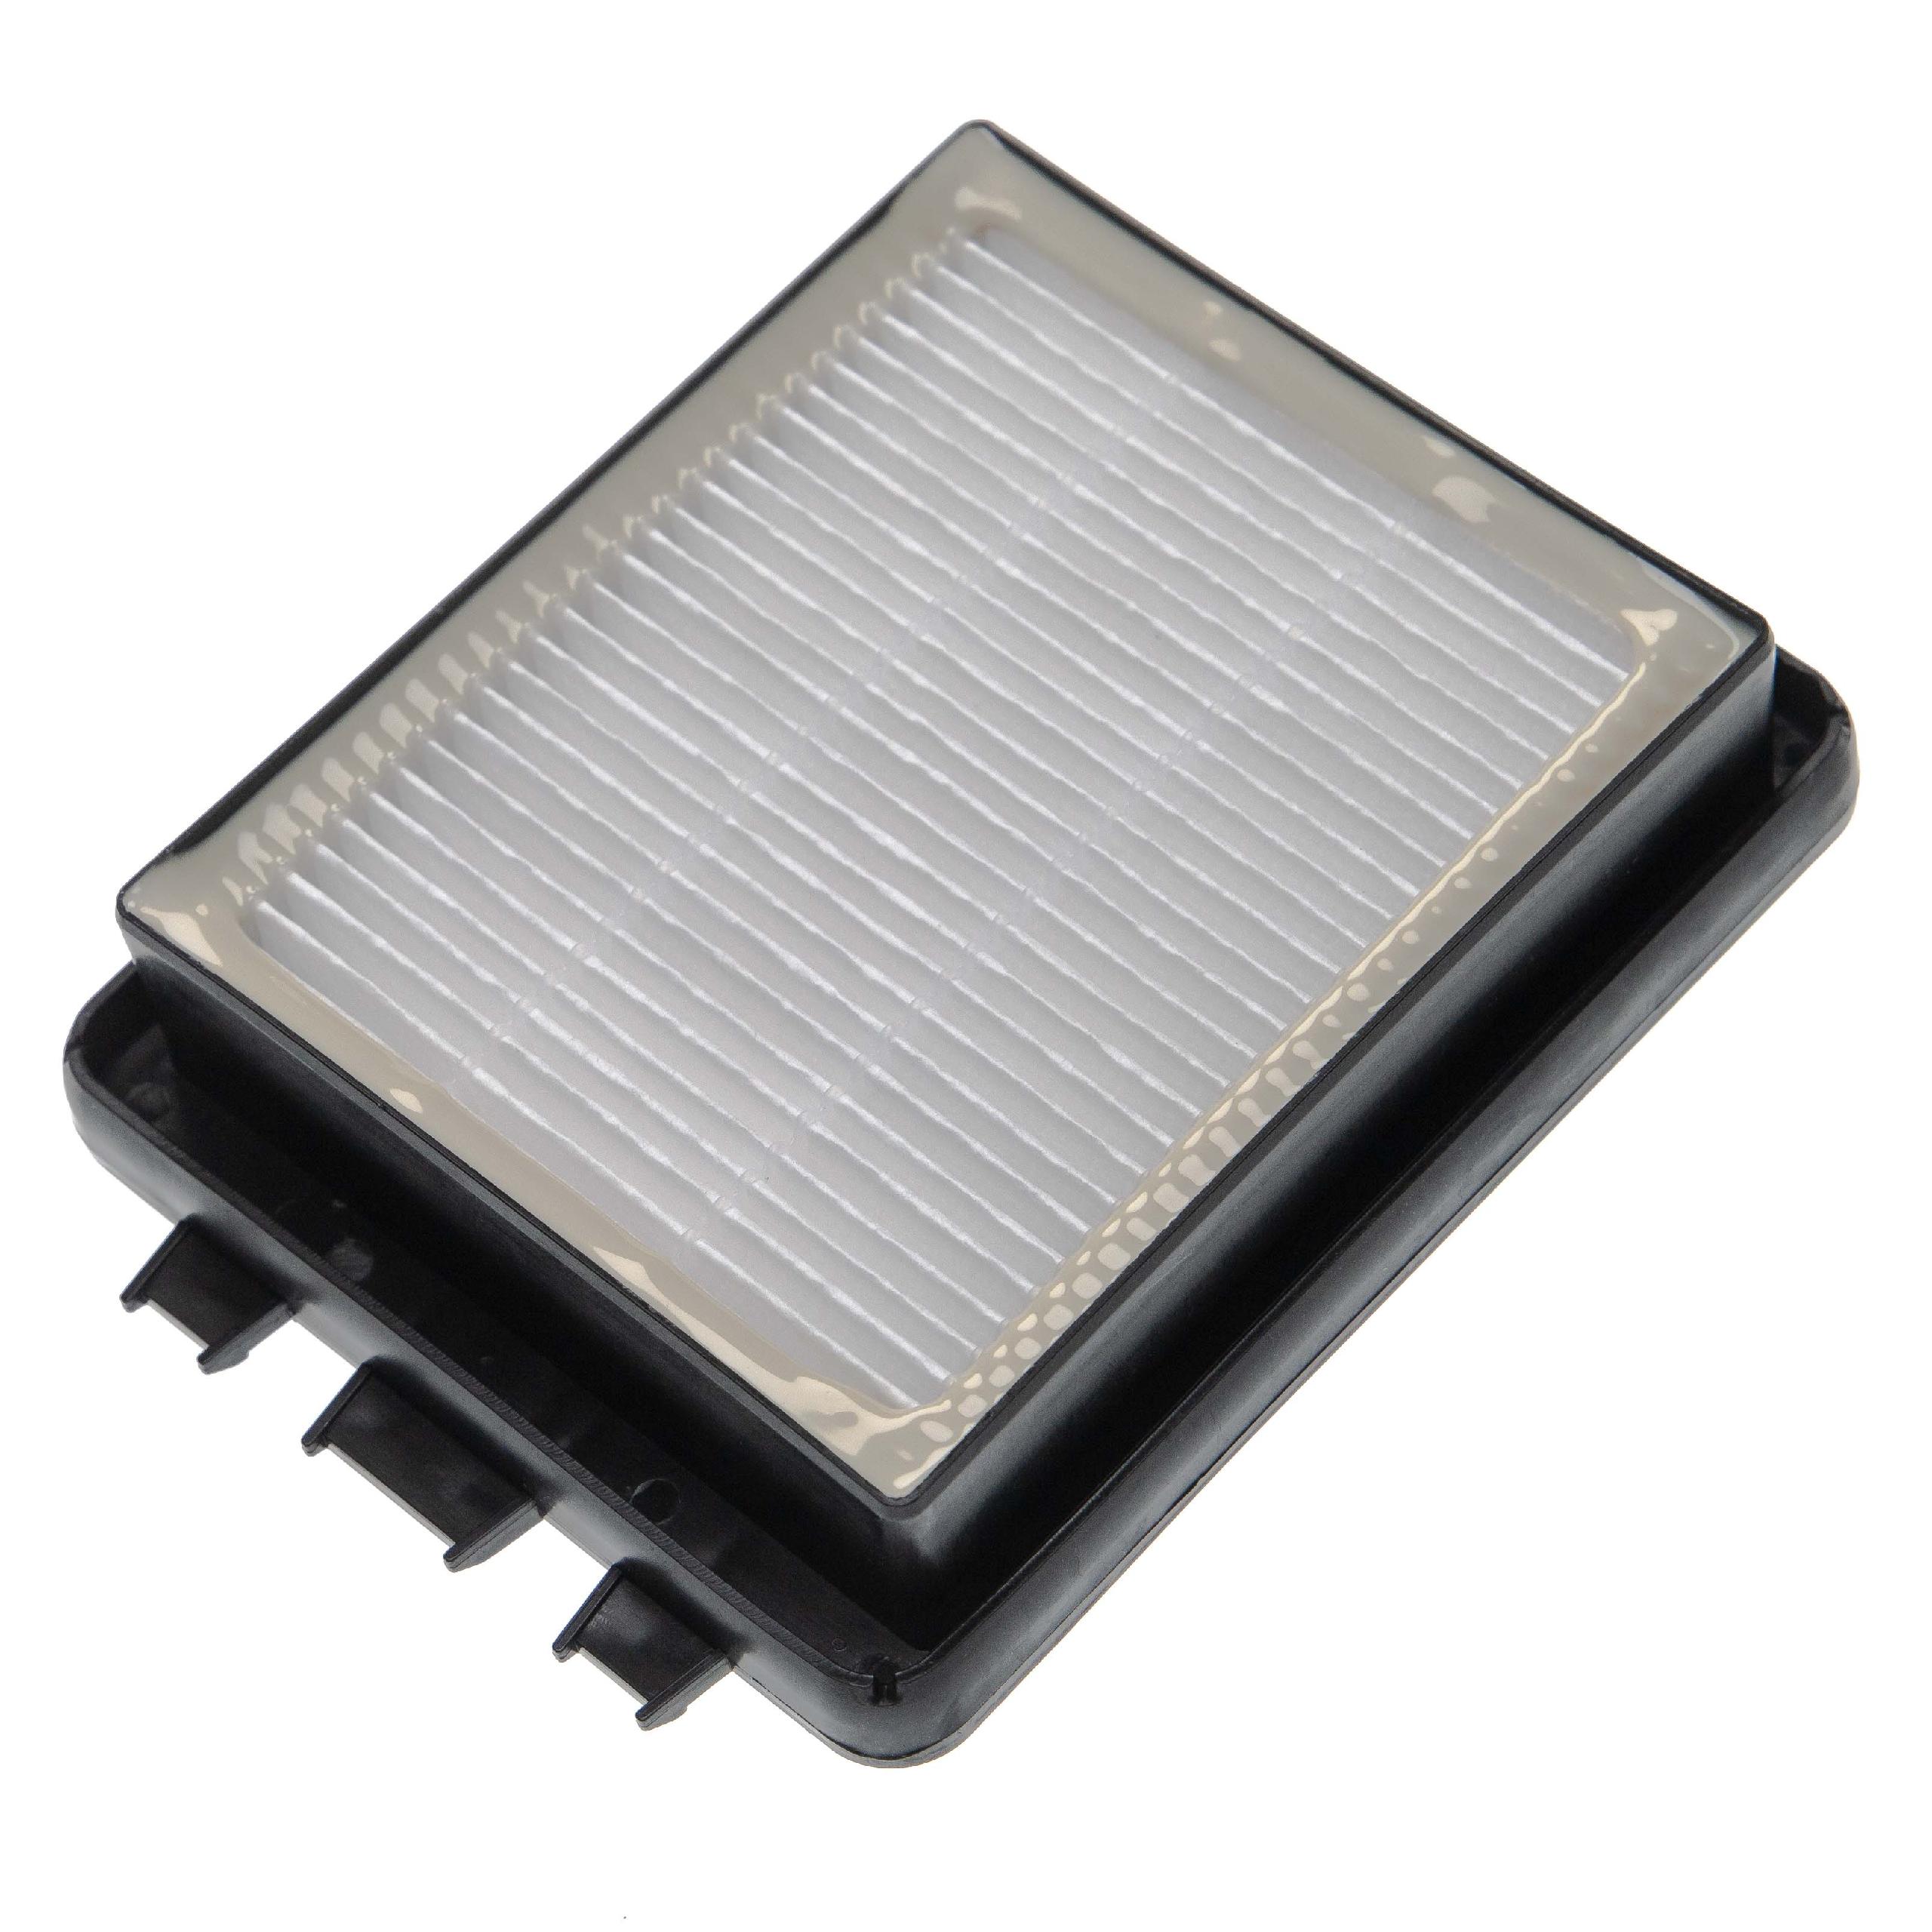 Filtre remplace Kärcher 6.414-805.0, 64148050 pour aspirateur - filtre EPA E12